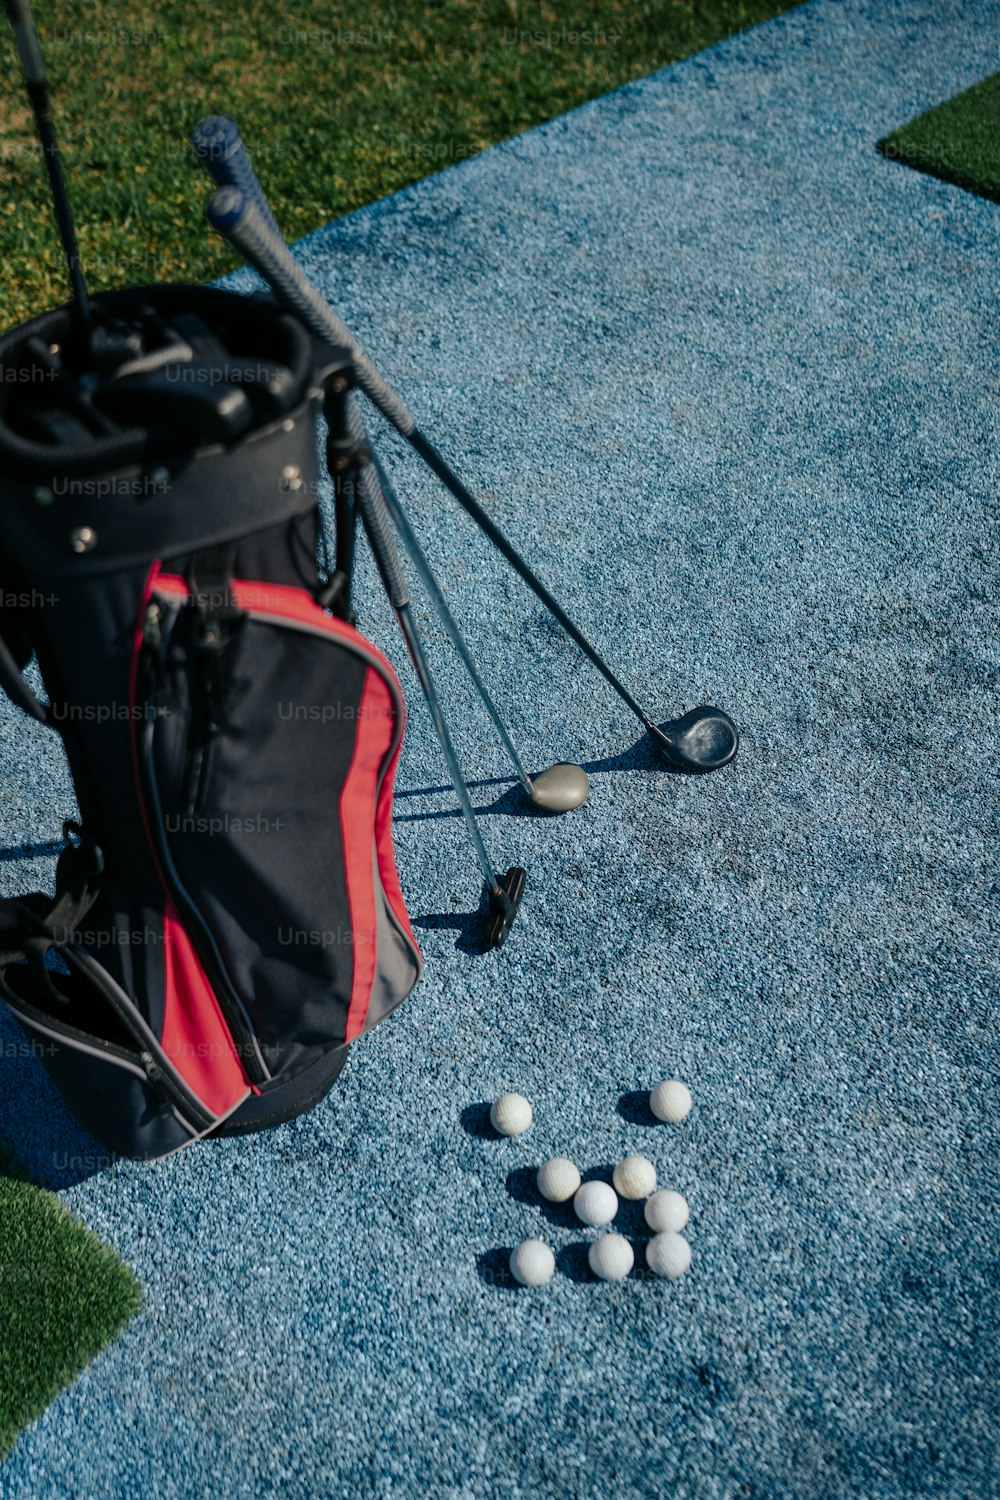 Una bolsa de pelotas de golf sentada en el suelo junto a un palo de golf